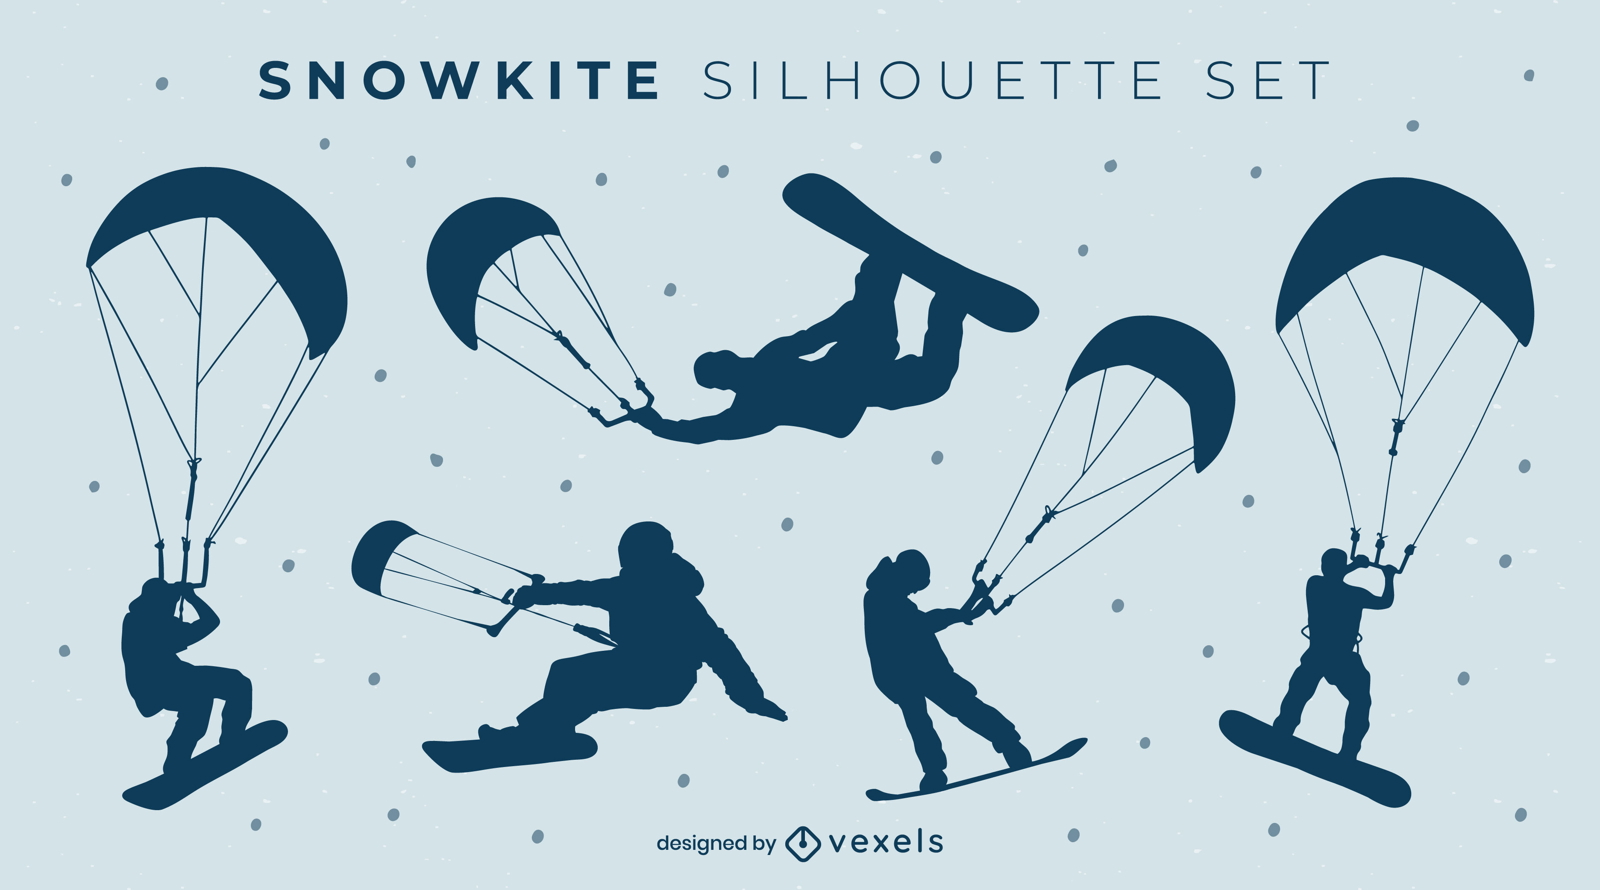 Snowkite silhouette set